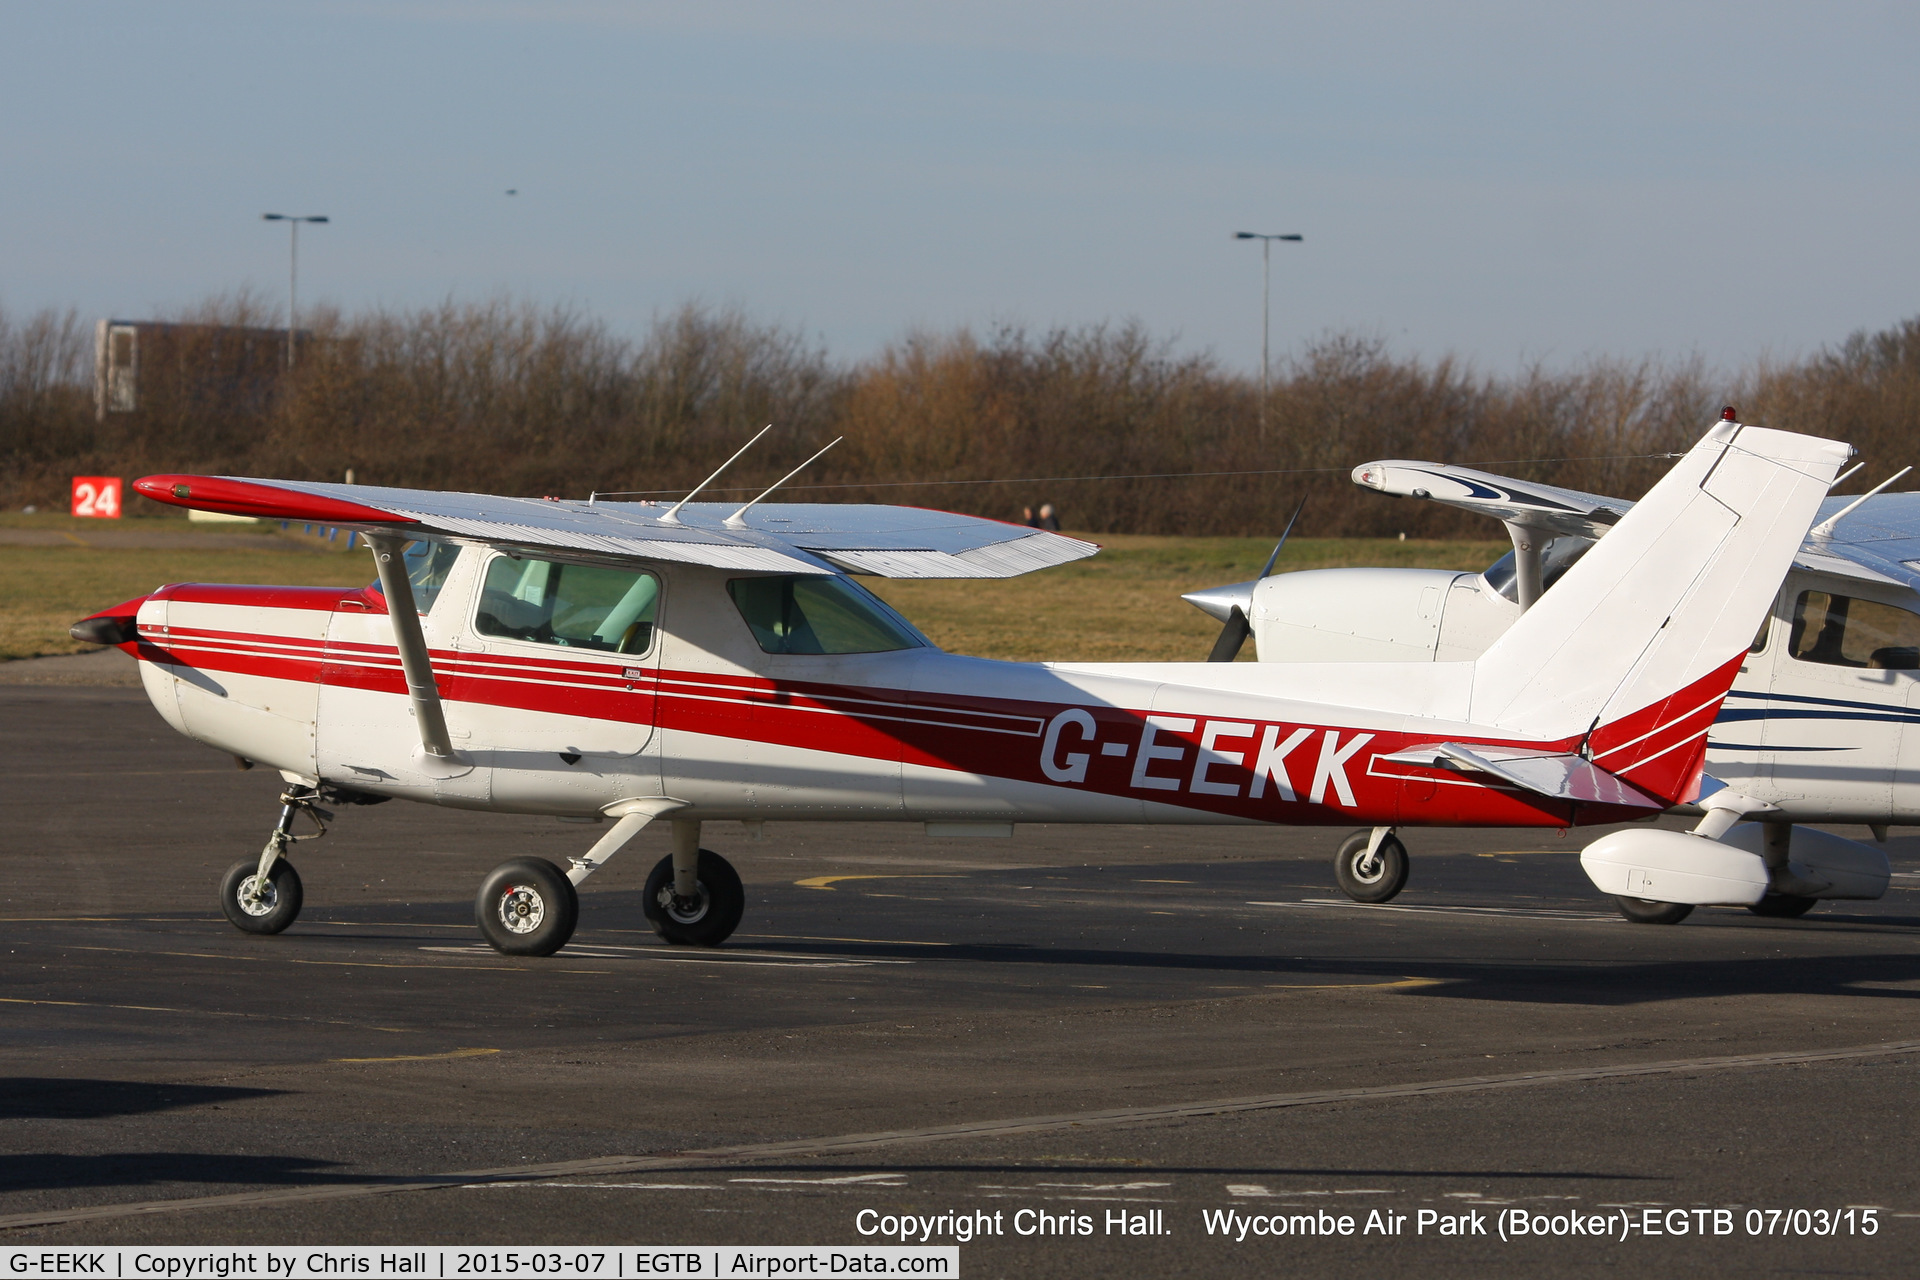 G-EEKK, 1982 Cessna 152 C/N 152-85621, Booker resident